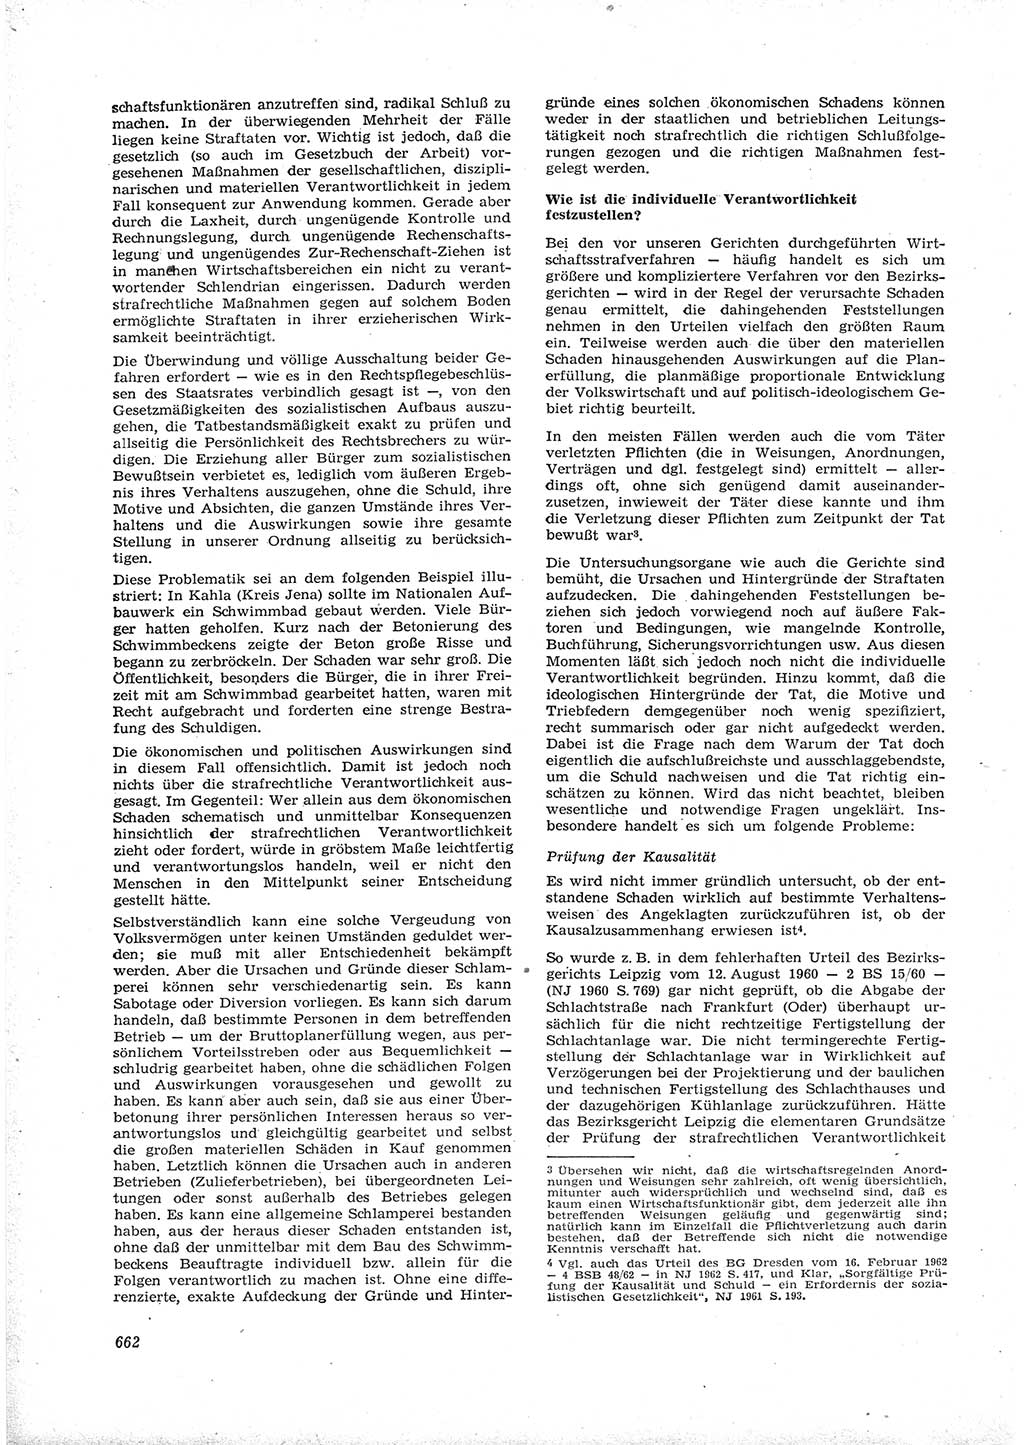 Neue Justiz (NJ), Zeitschrift für Recht und Rechtswissenschaft [Deutsche Demokratische Republik (DDR)], 16. Jahrgang 1962, Seite 662 (NJ DDR 1962, S. 662)